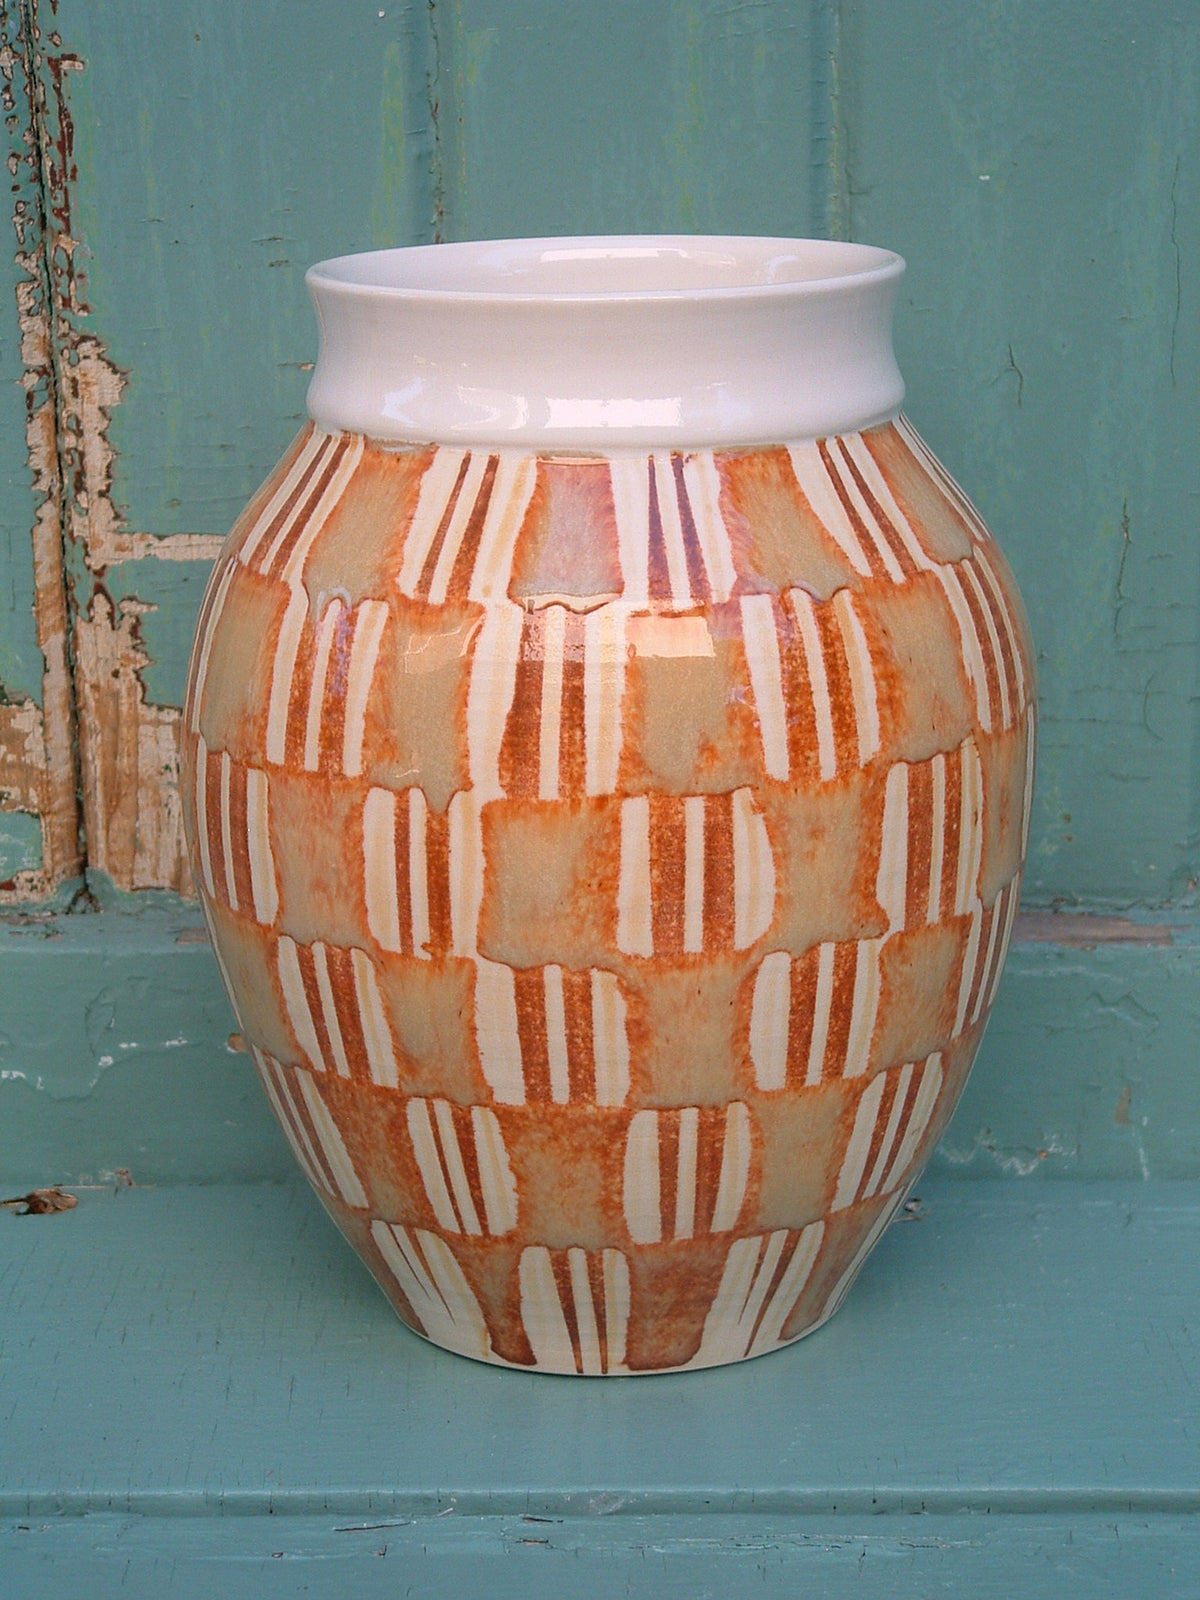 Plaid Vase by Carolynne Pynn Trudeau